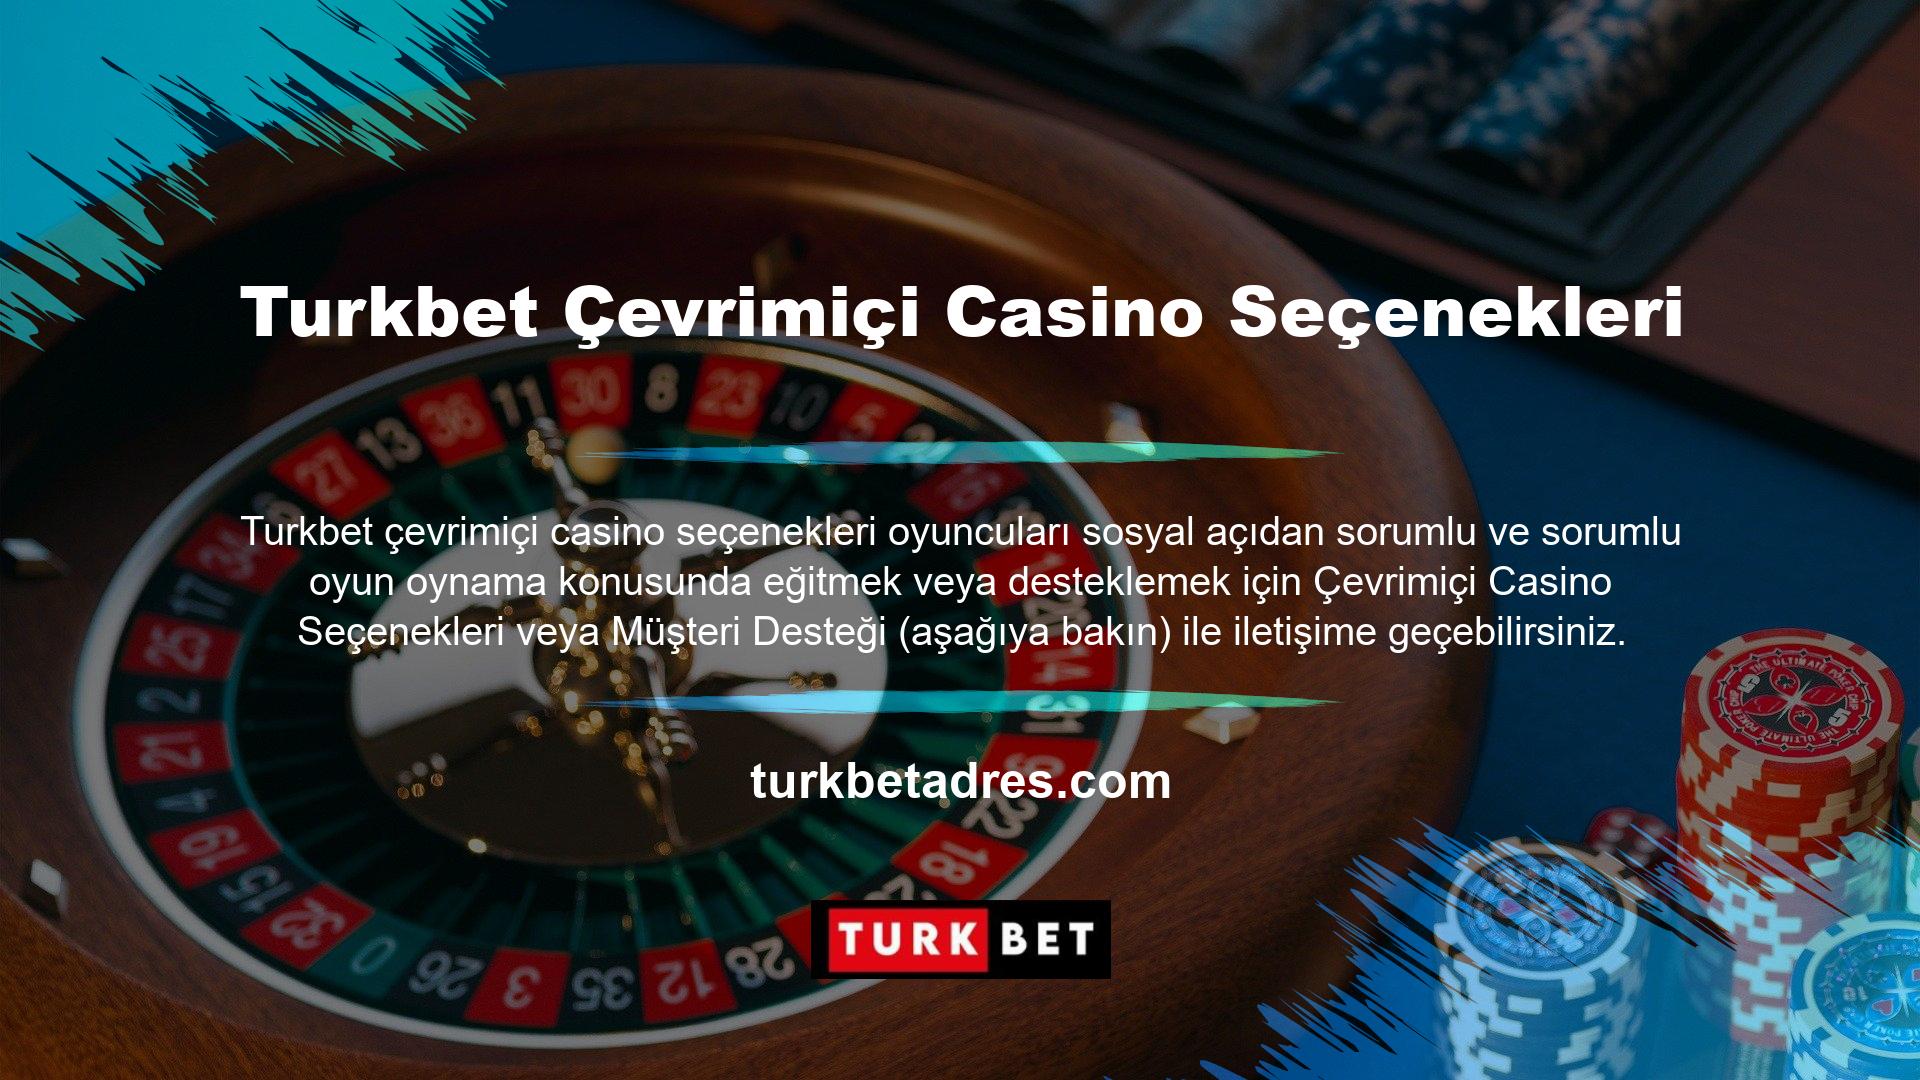 Güvenlikten bahsetmişken, site, Turkbet çevrimiçi casino seçenekleri nasıl üye olunur oyuncu verilerini ve fonlarını korumak için 128 bit SSL teknolojisi kullanılarak tamamen şifrelenmiştir